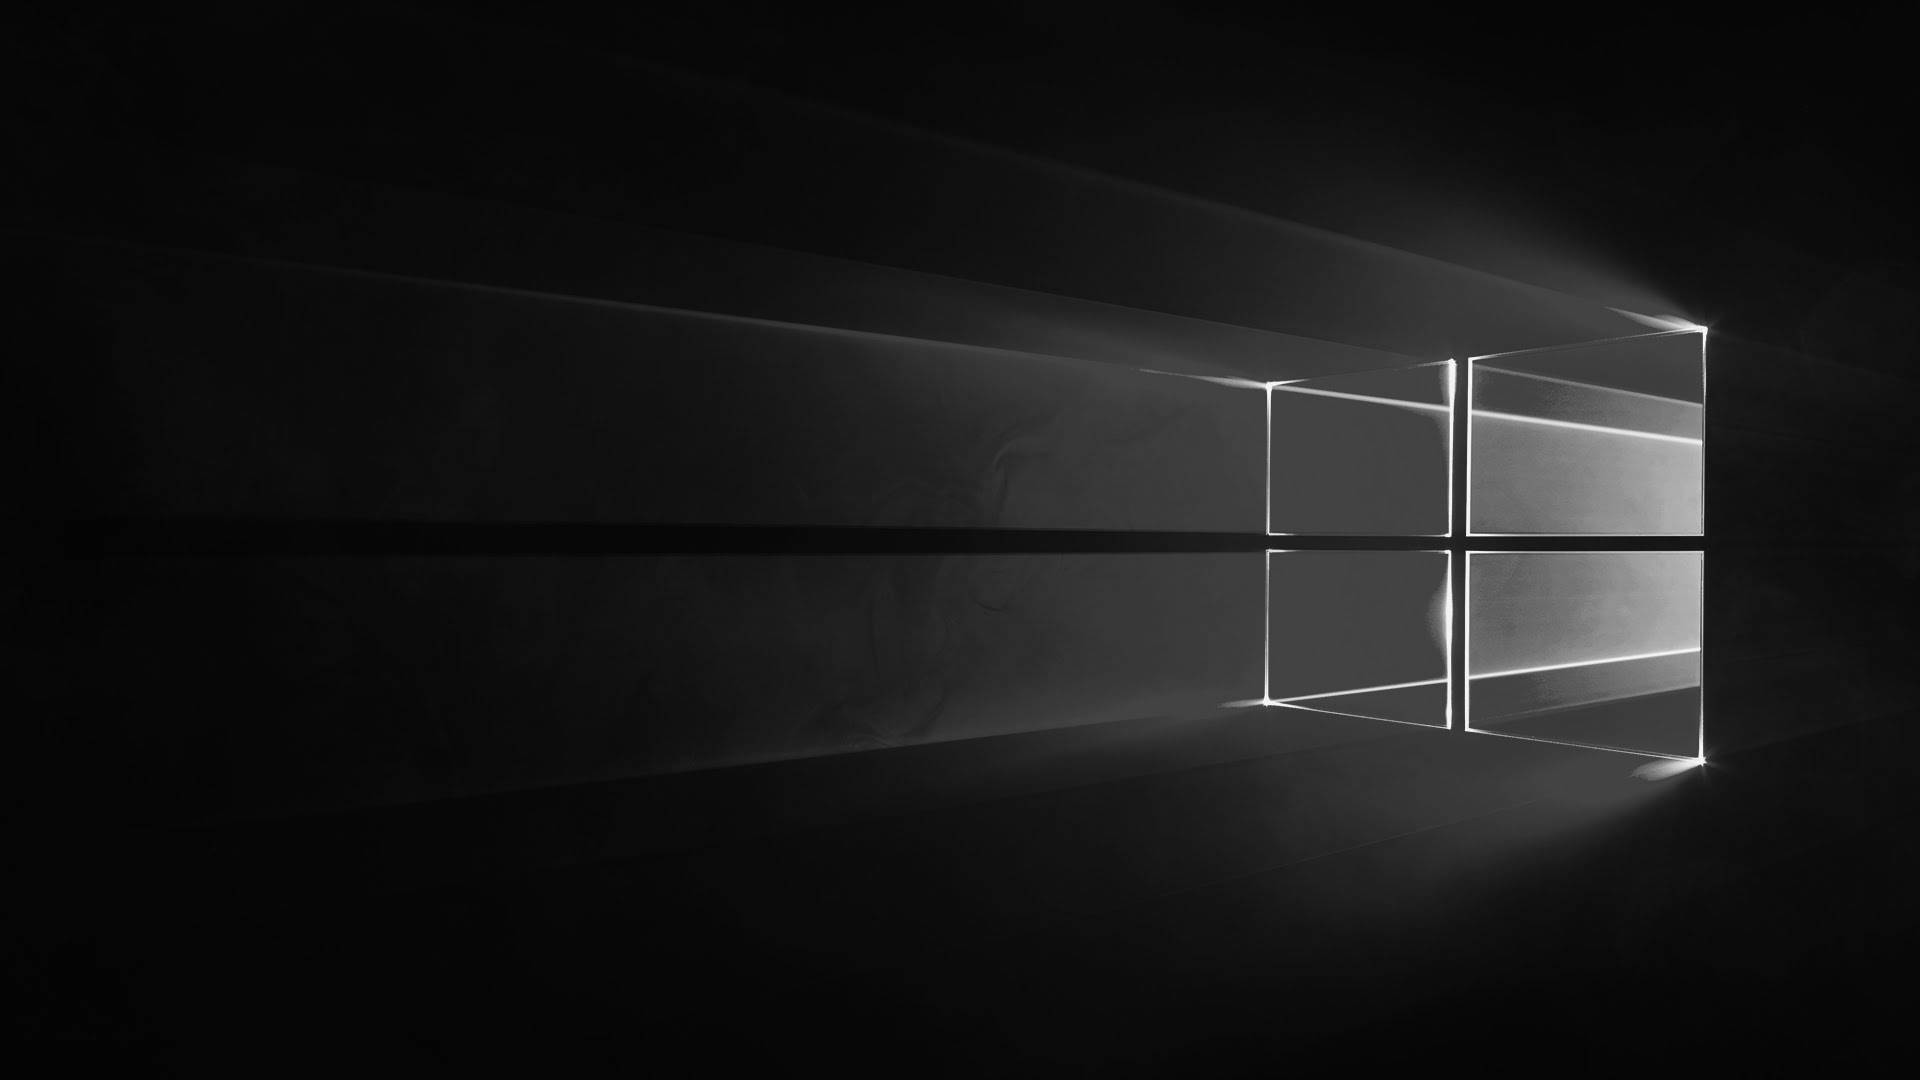 HD wallpaper: Windows 10, Black, 4K, 8K, 10K